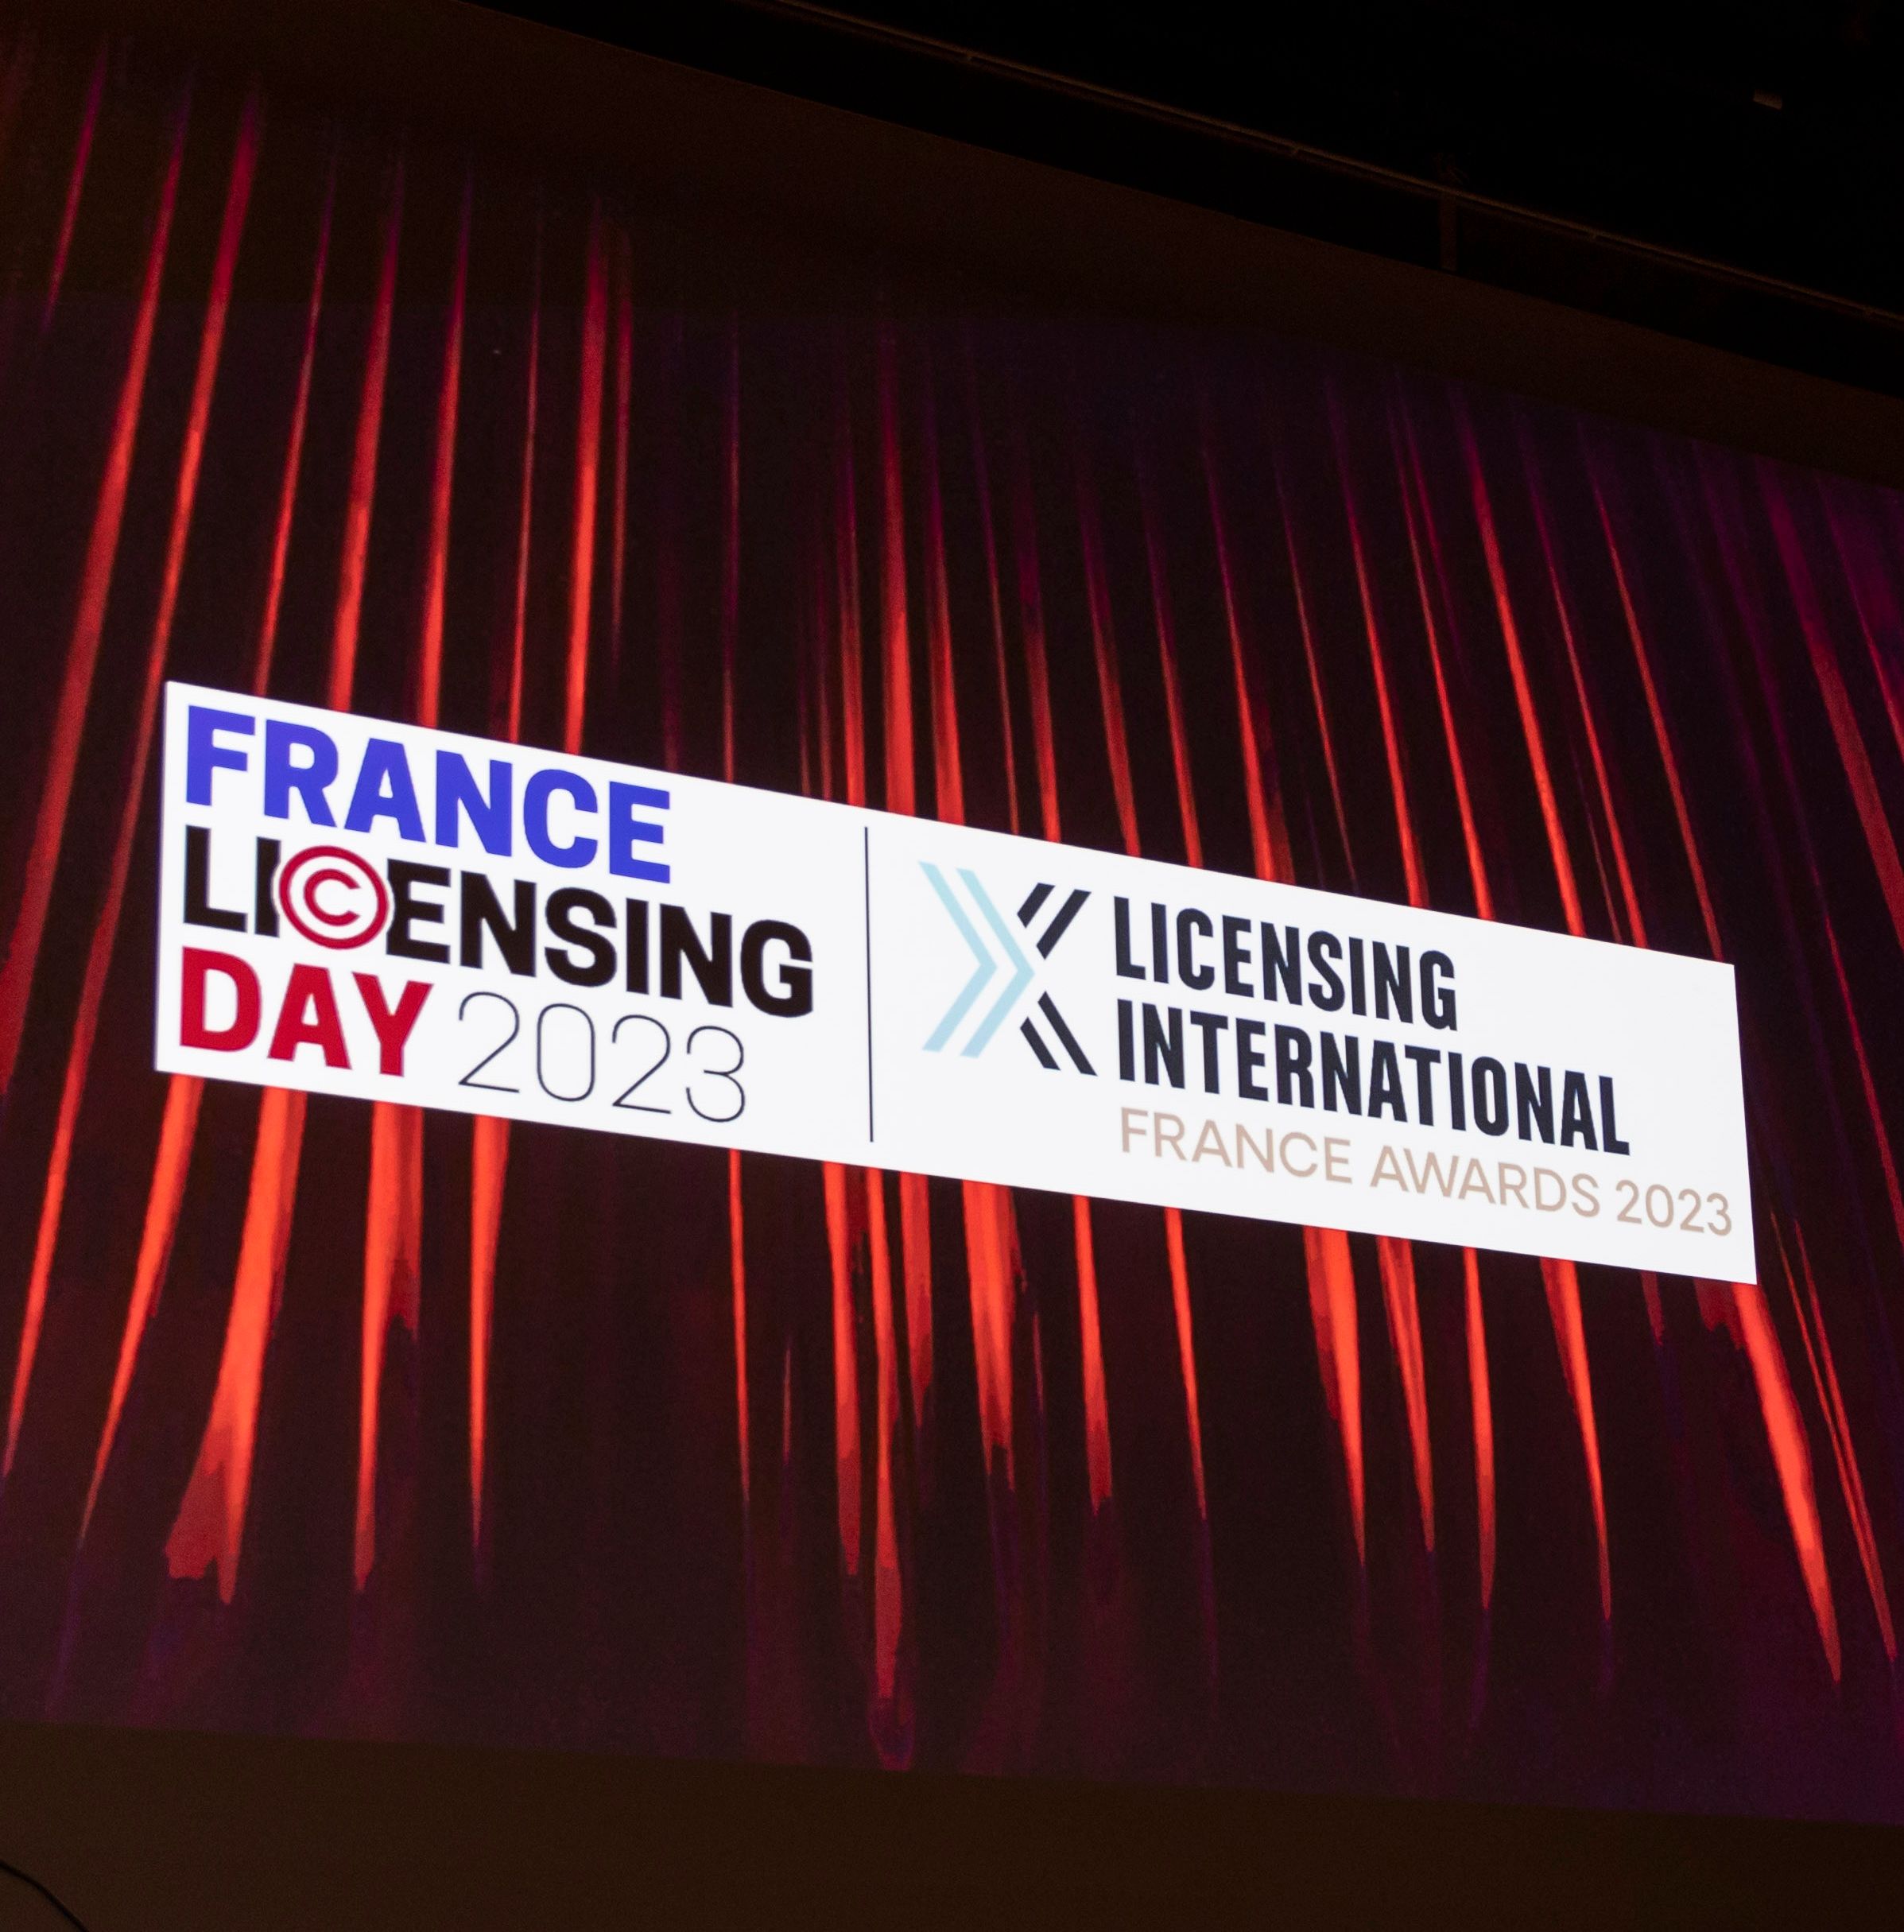  France Licensing Day und Licensing International France Awards kehren nach Paris zurück